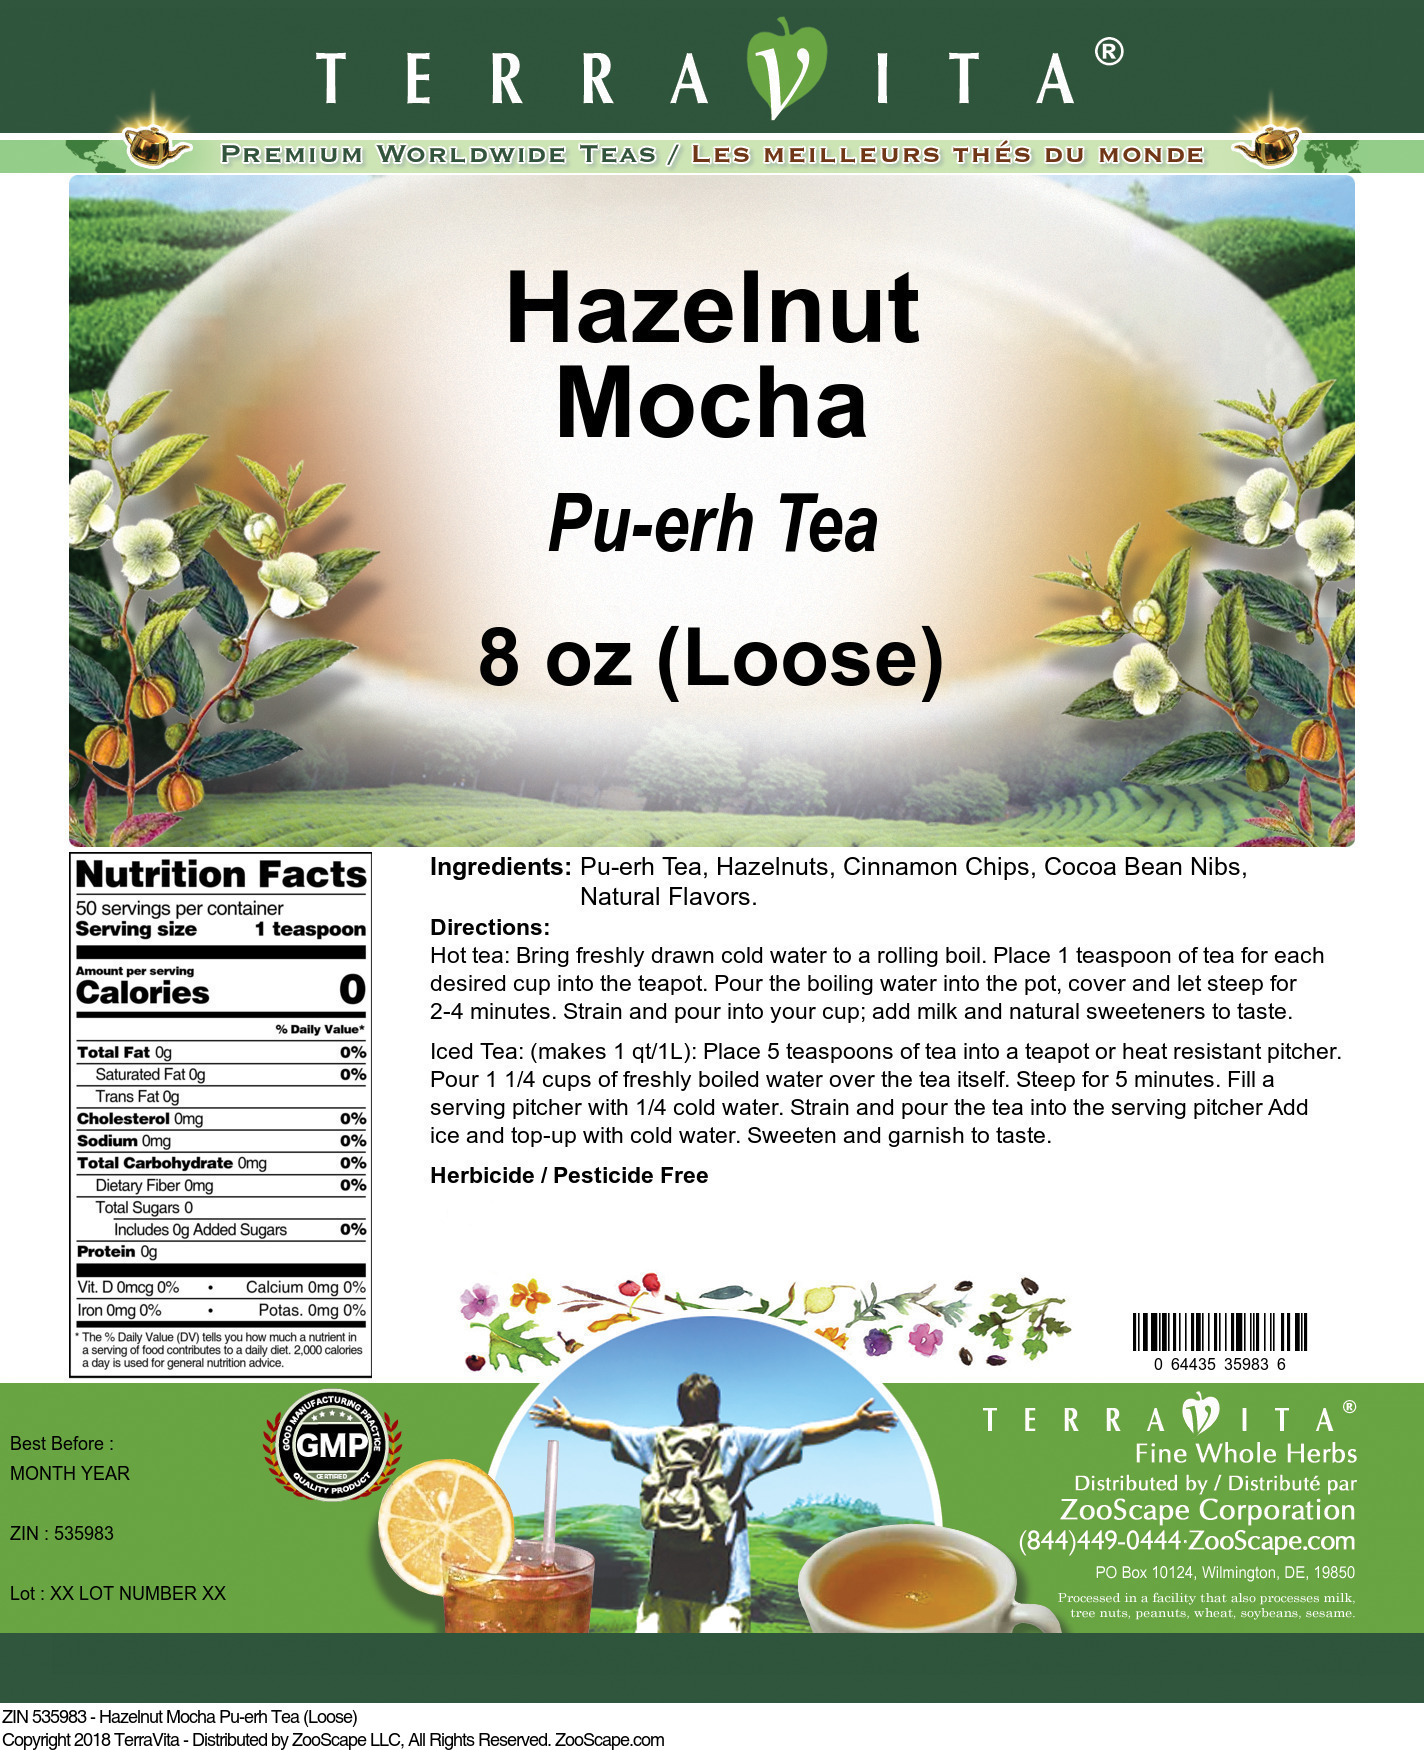 Hazelnut Mocha Pu-erh Tea (Loose) - Label